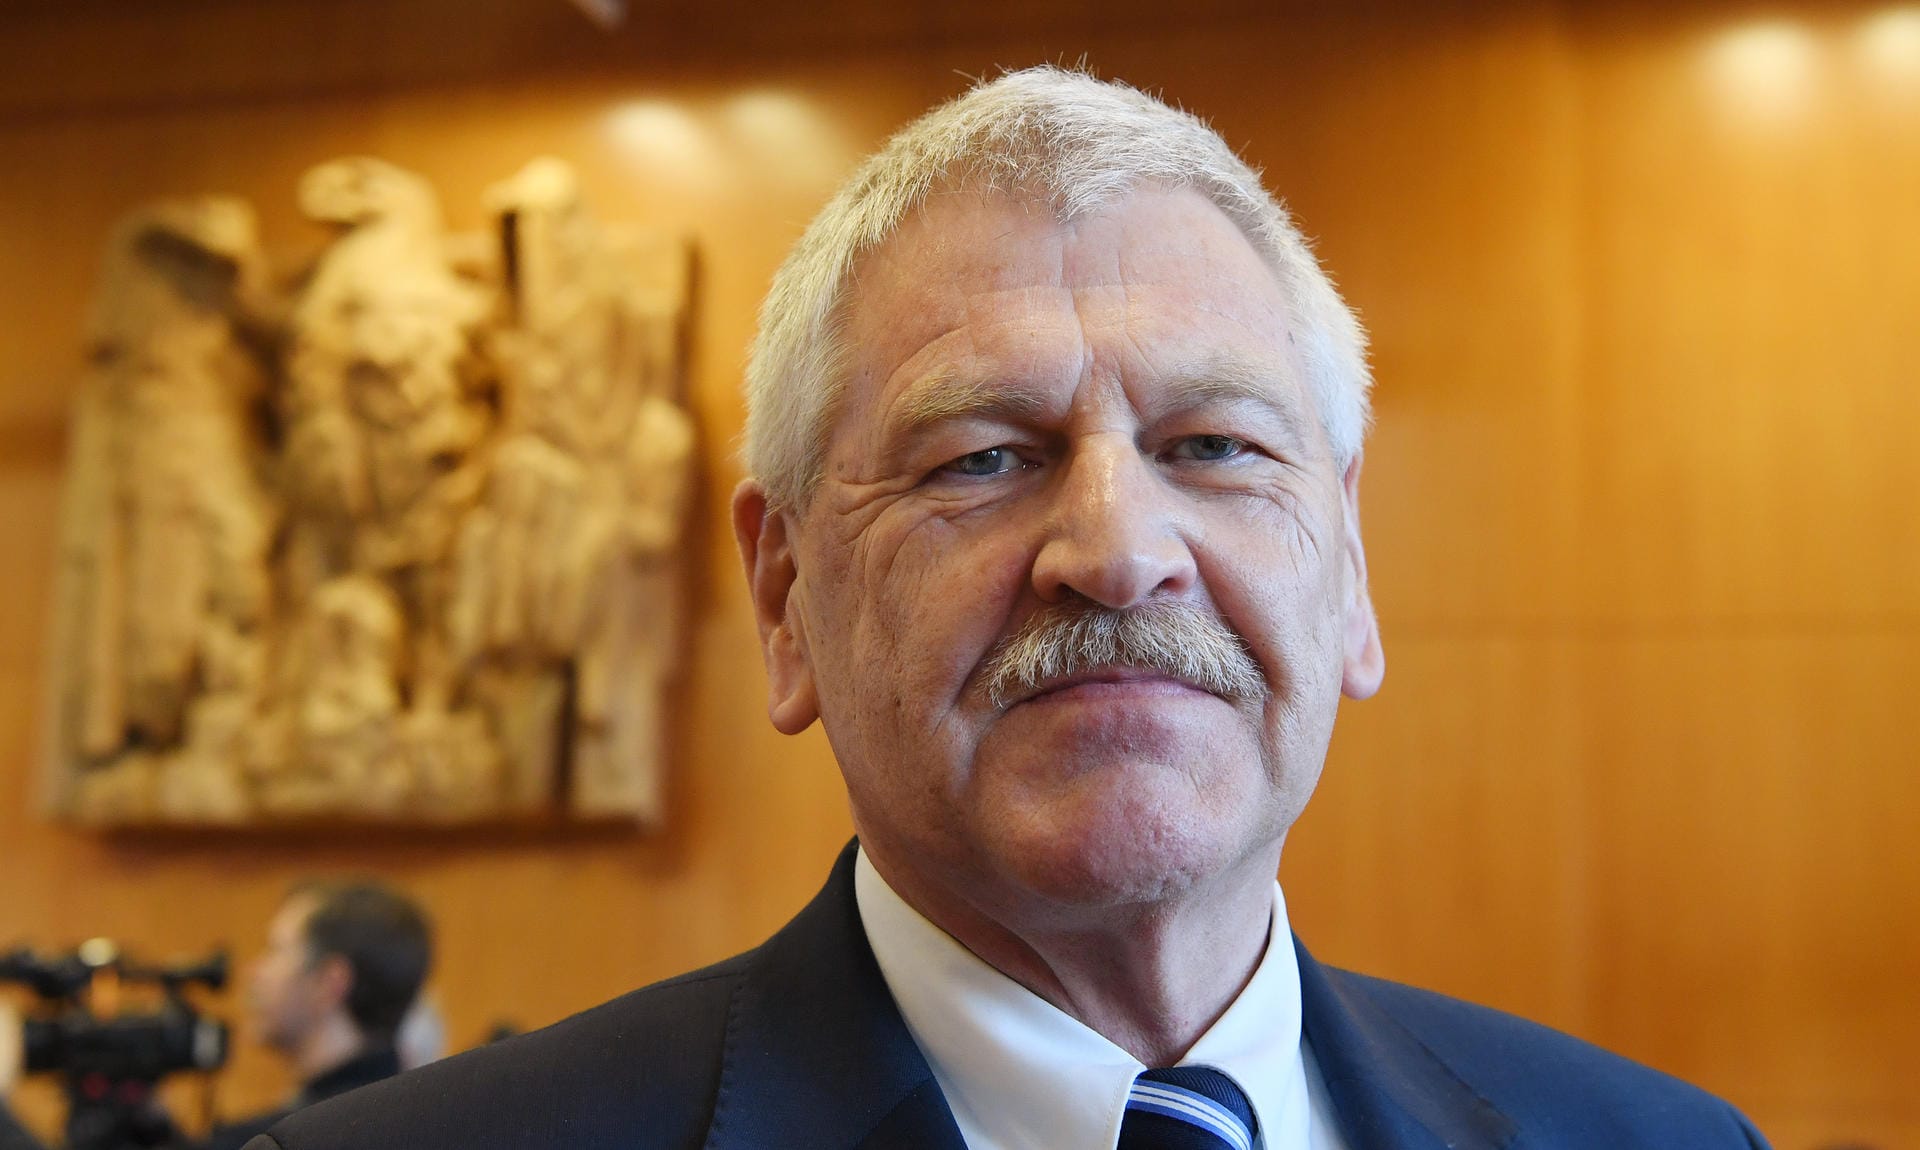 Udo Voigt war jetzt fünf Jahre lang der einzige Europaparlamentarier der rechtsextremen NPD, deren Vorsitzender er viele Jahre war.